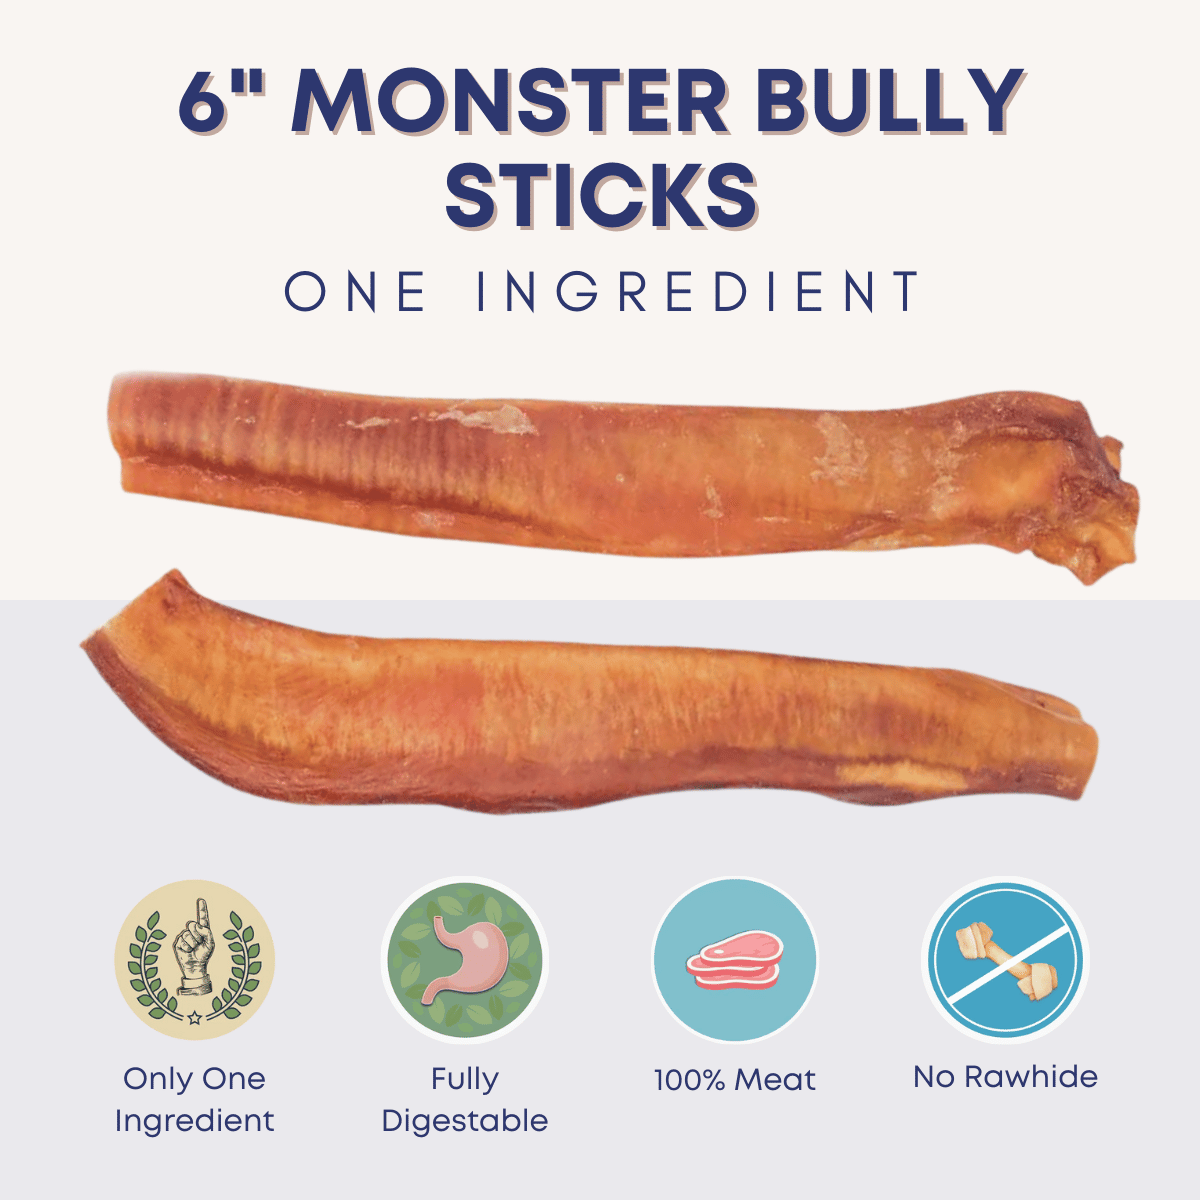 Image of 6" Monster Bully Sticks